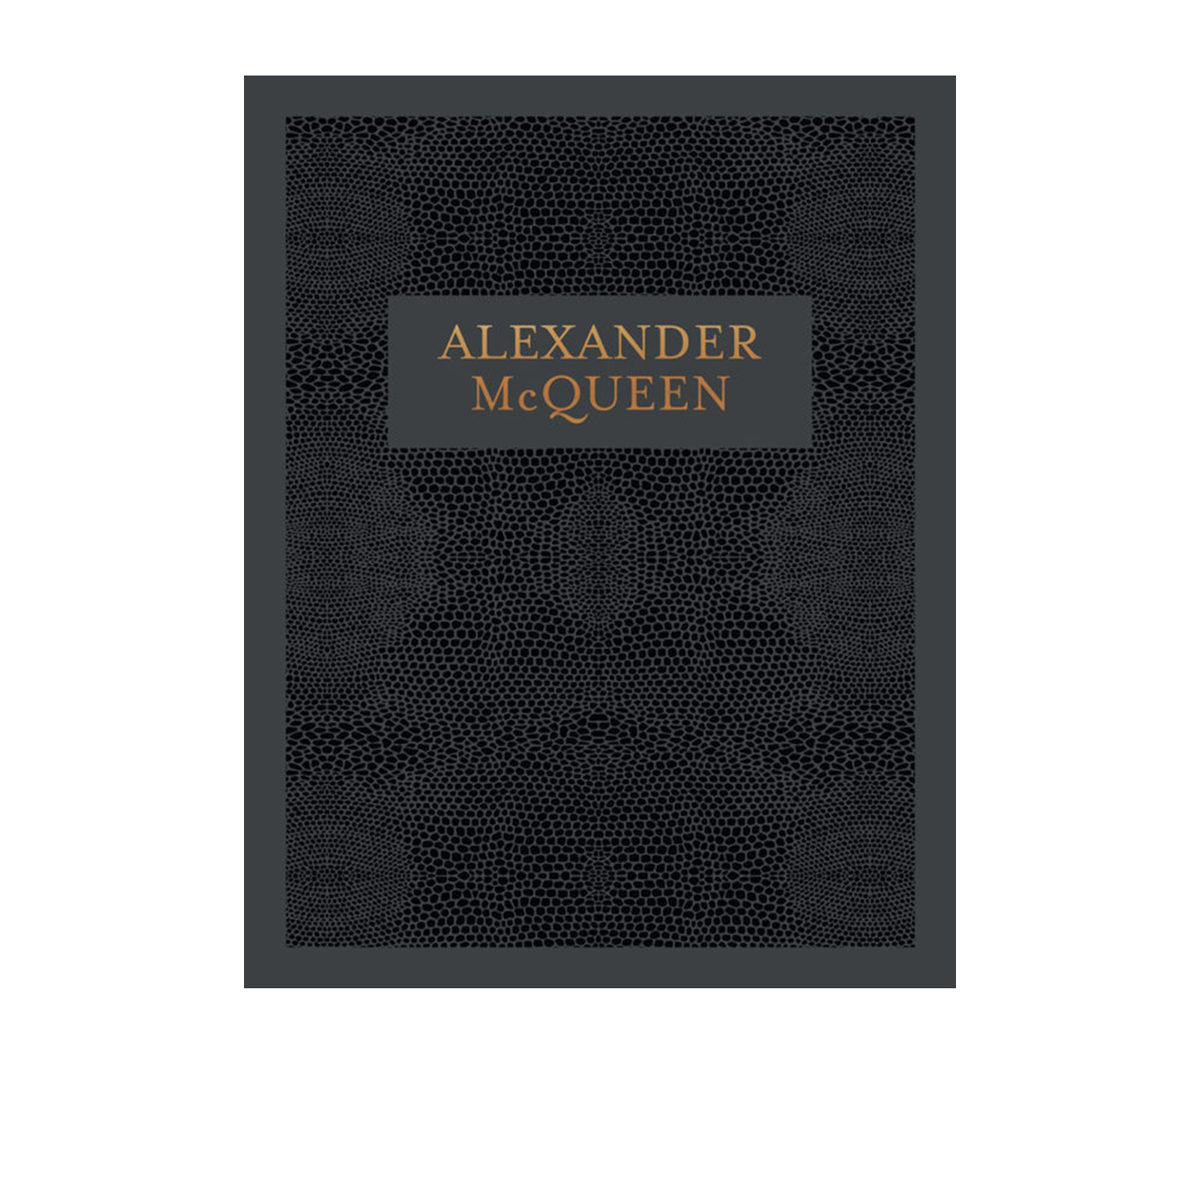 Alexander Mc Queen Coffee Table Book